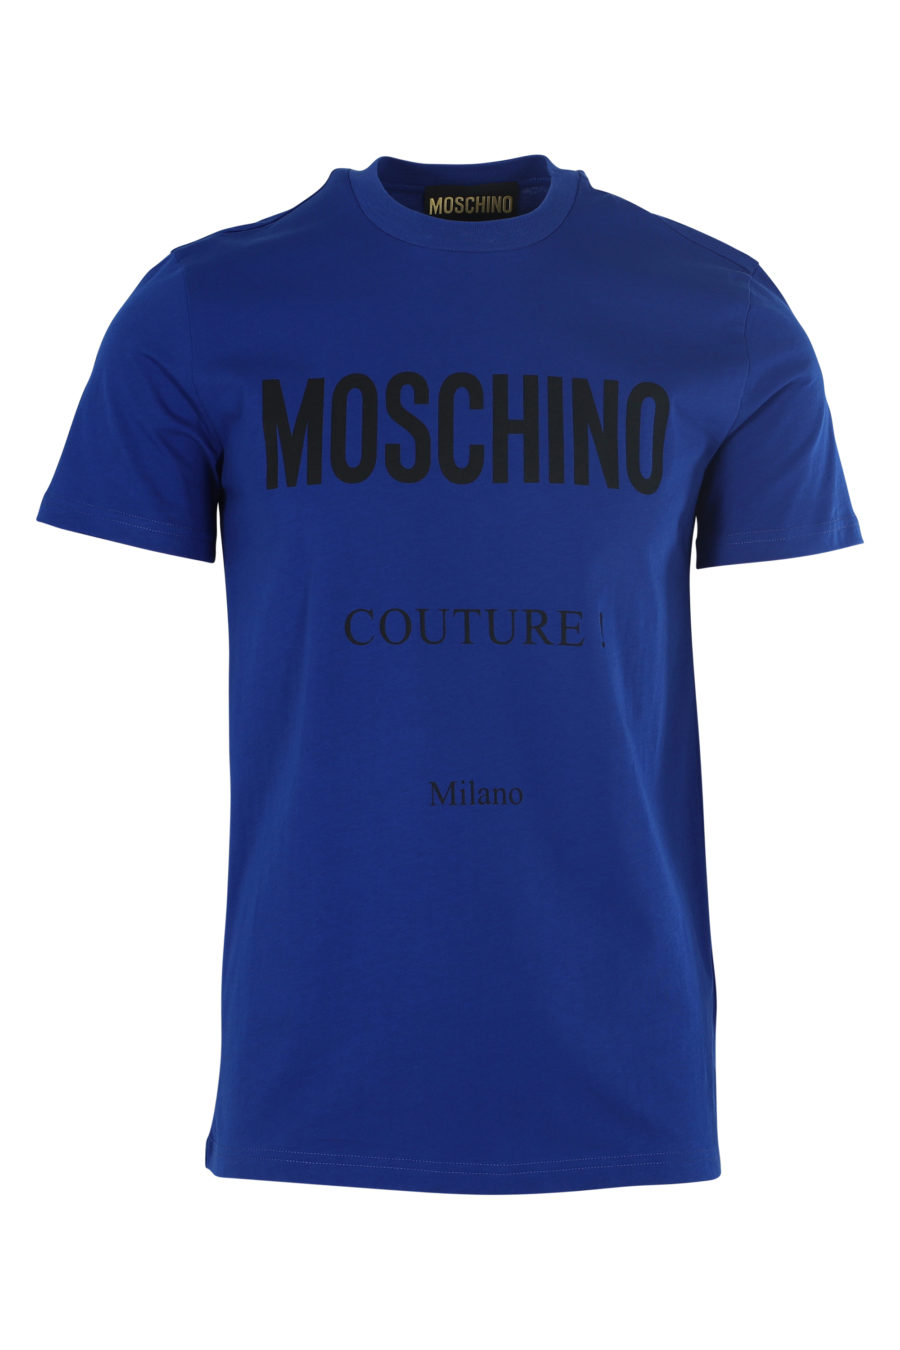 Camiseta azul oscuro con logo "Couture" - IMG 6096